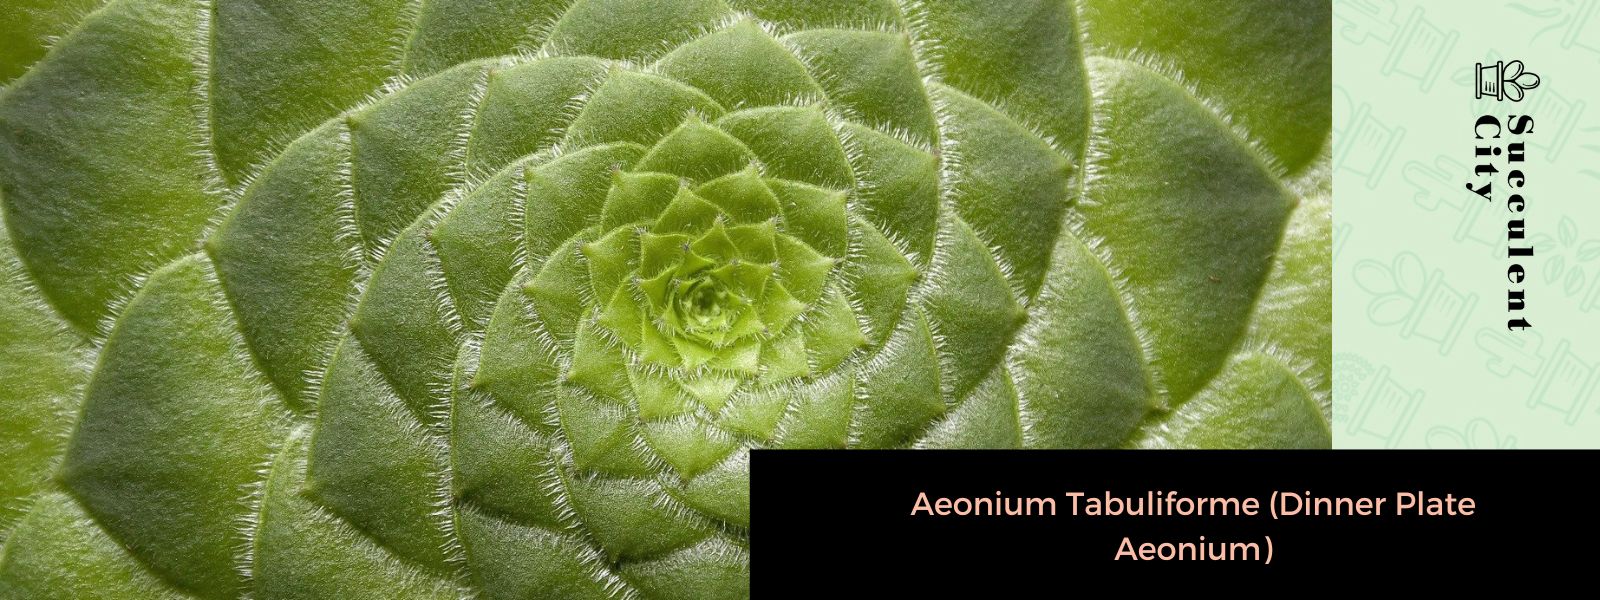 Aeonium tabuliforme (aeonium plato llano)